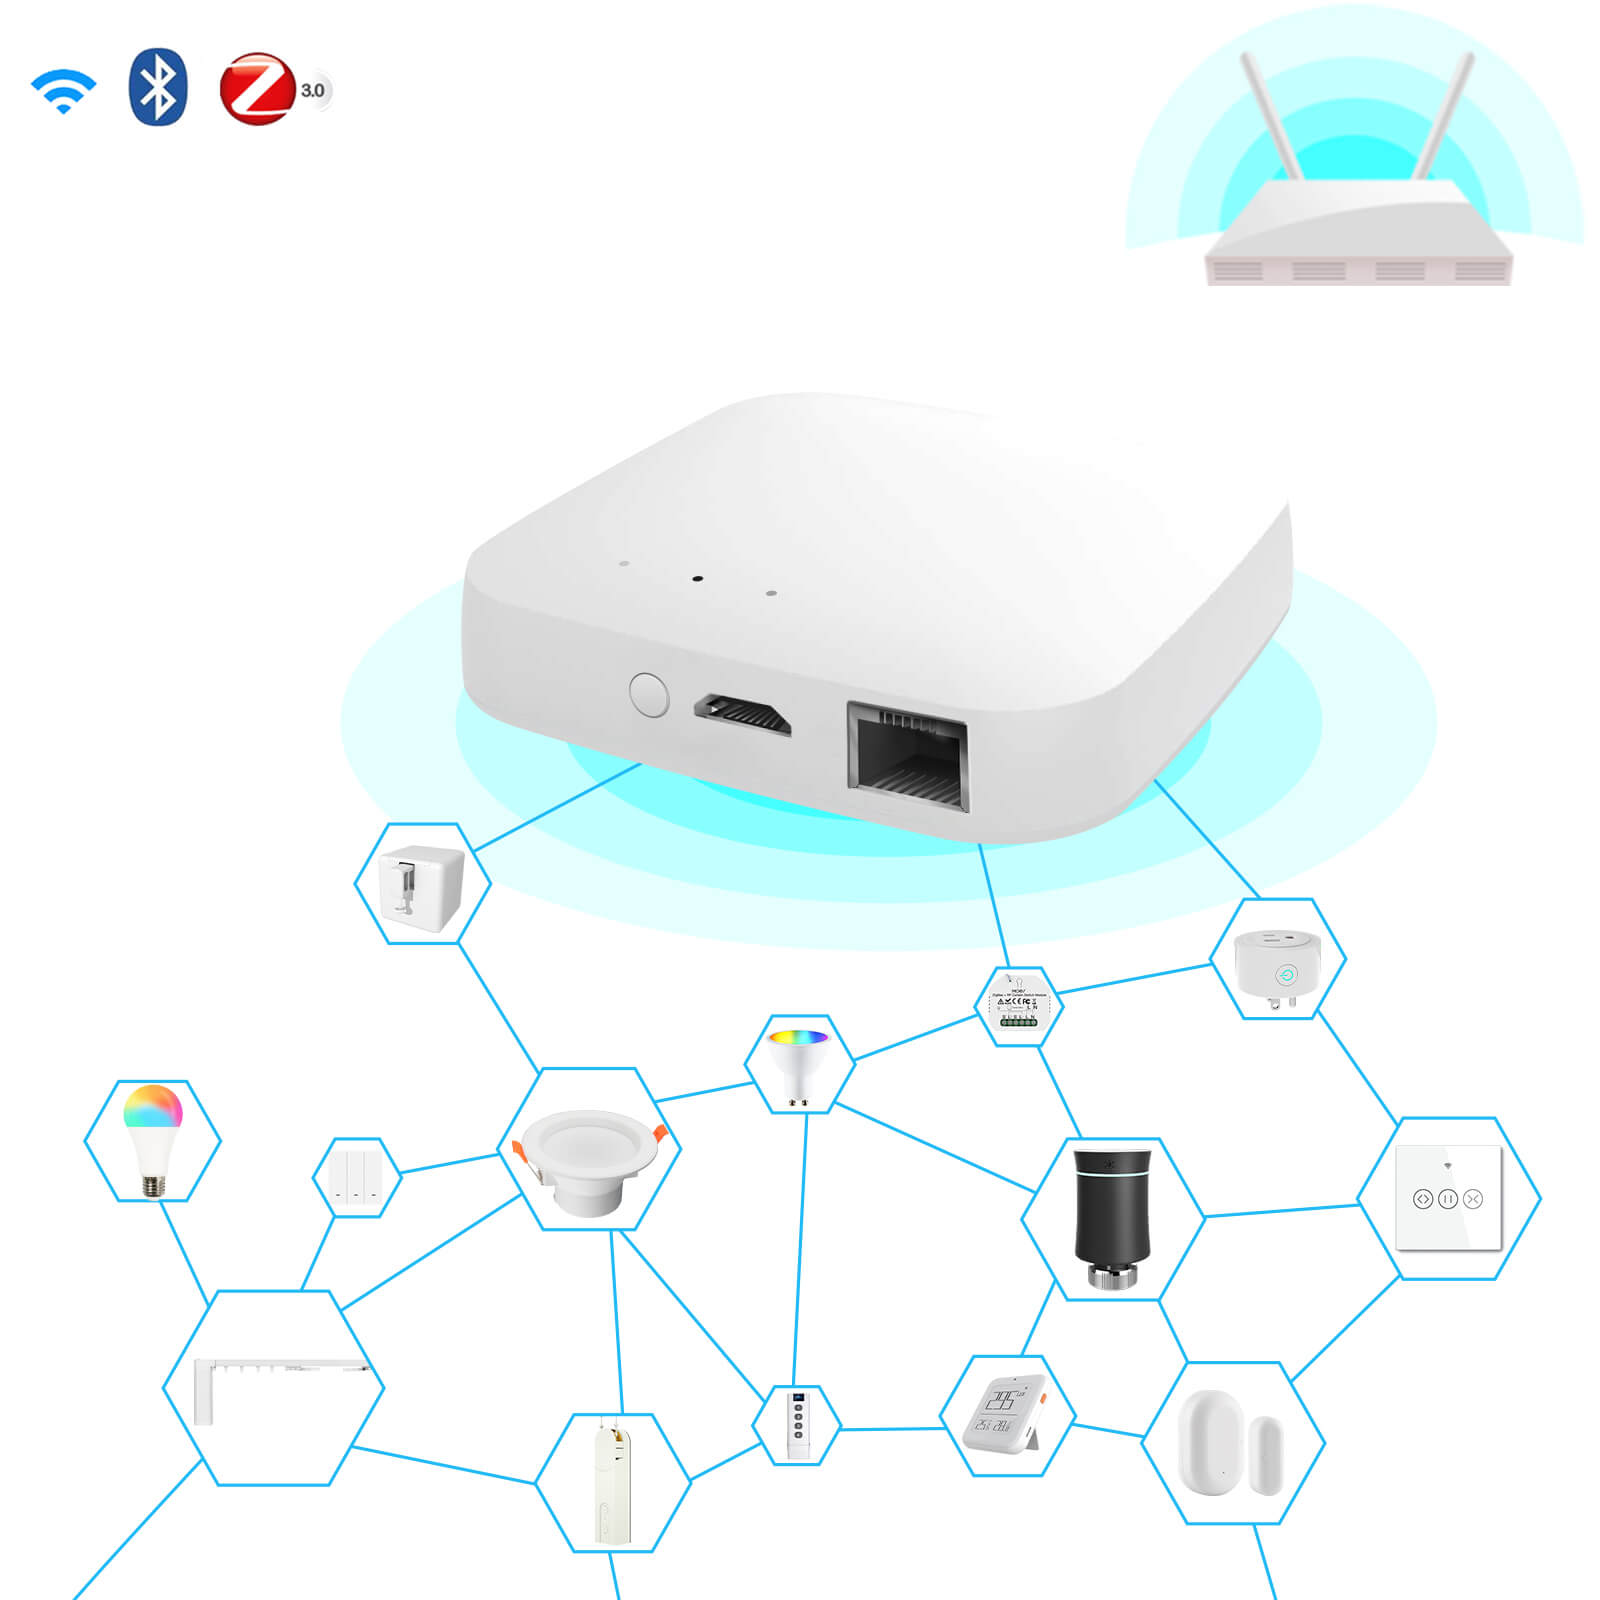 Tuya ZigBee Smart Plug with Energy monitoring - Zigbee - Home